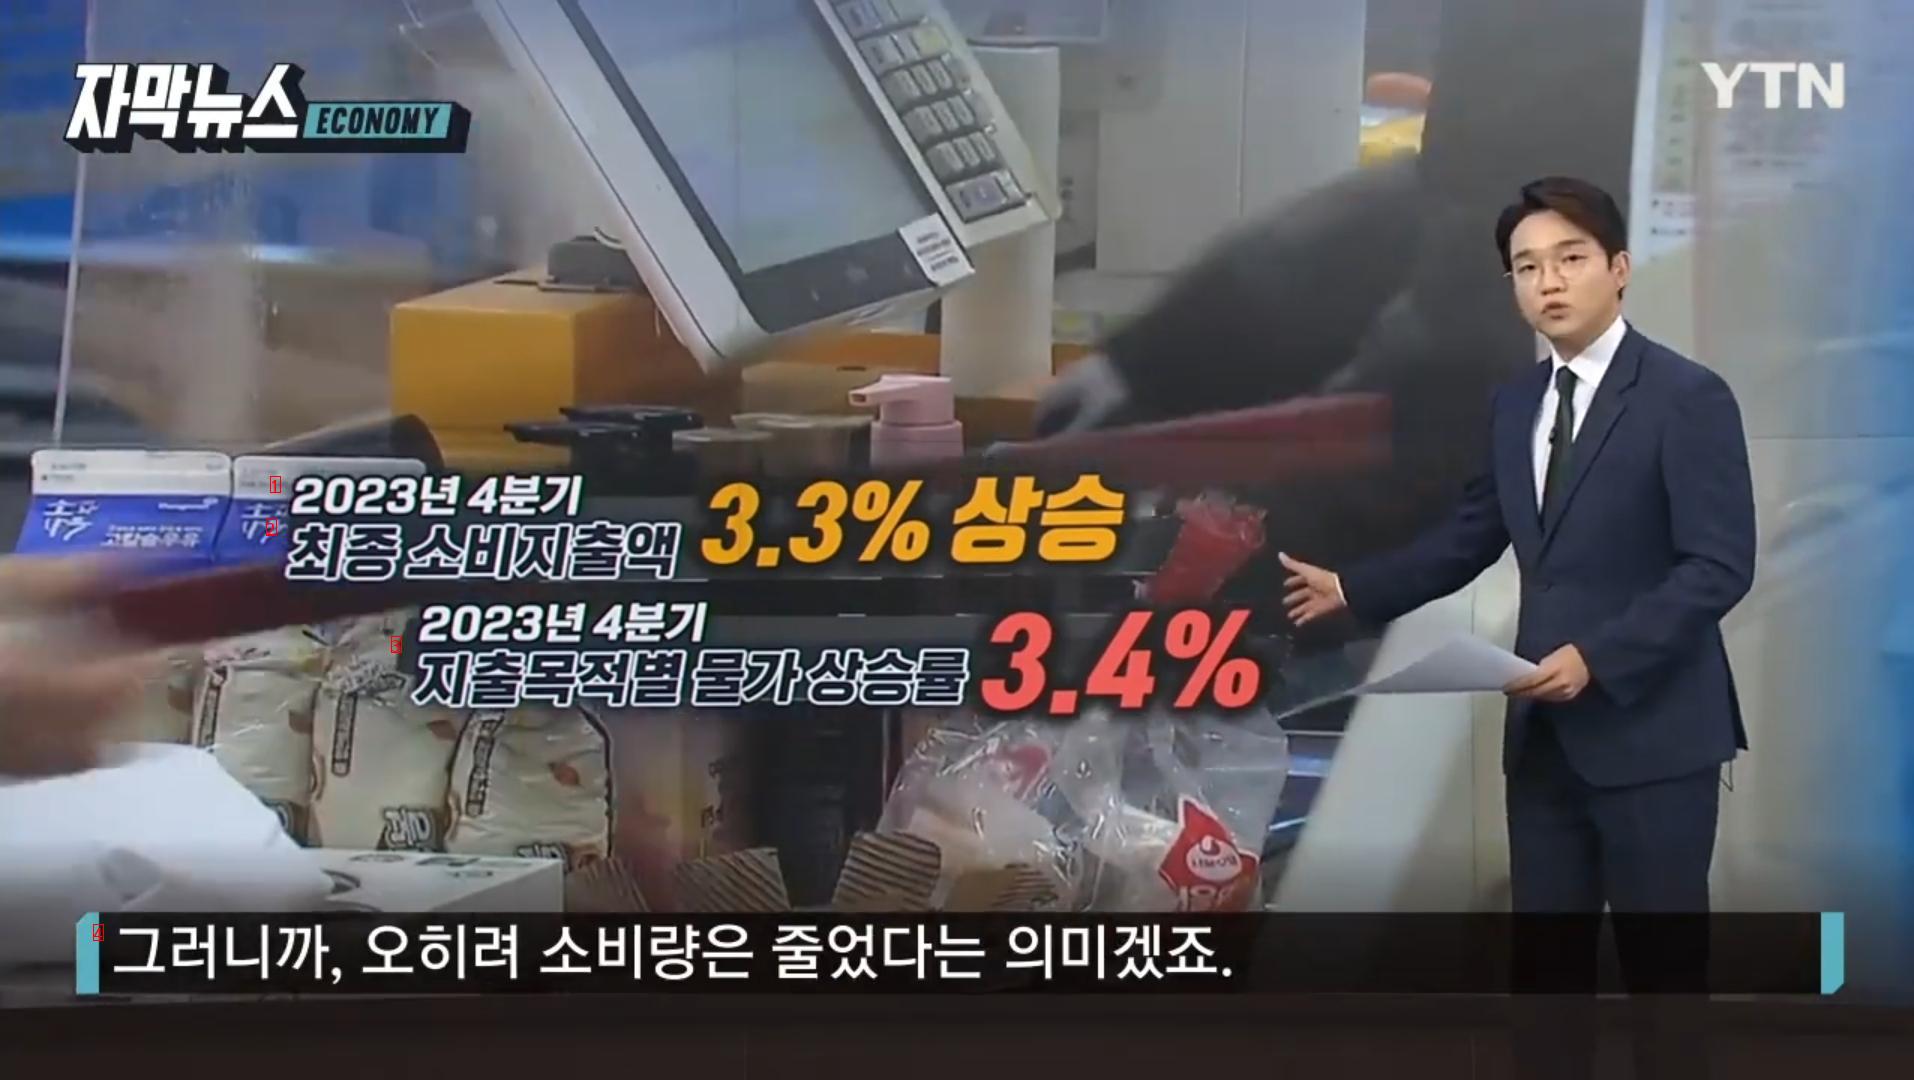 먹는것까지 줄였는데 한국인들 특이현상